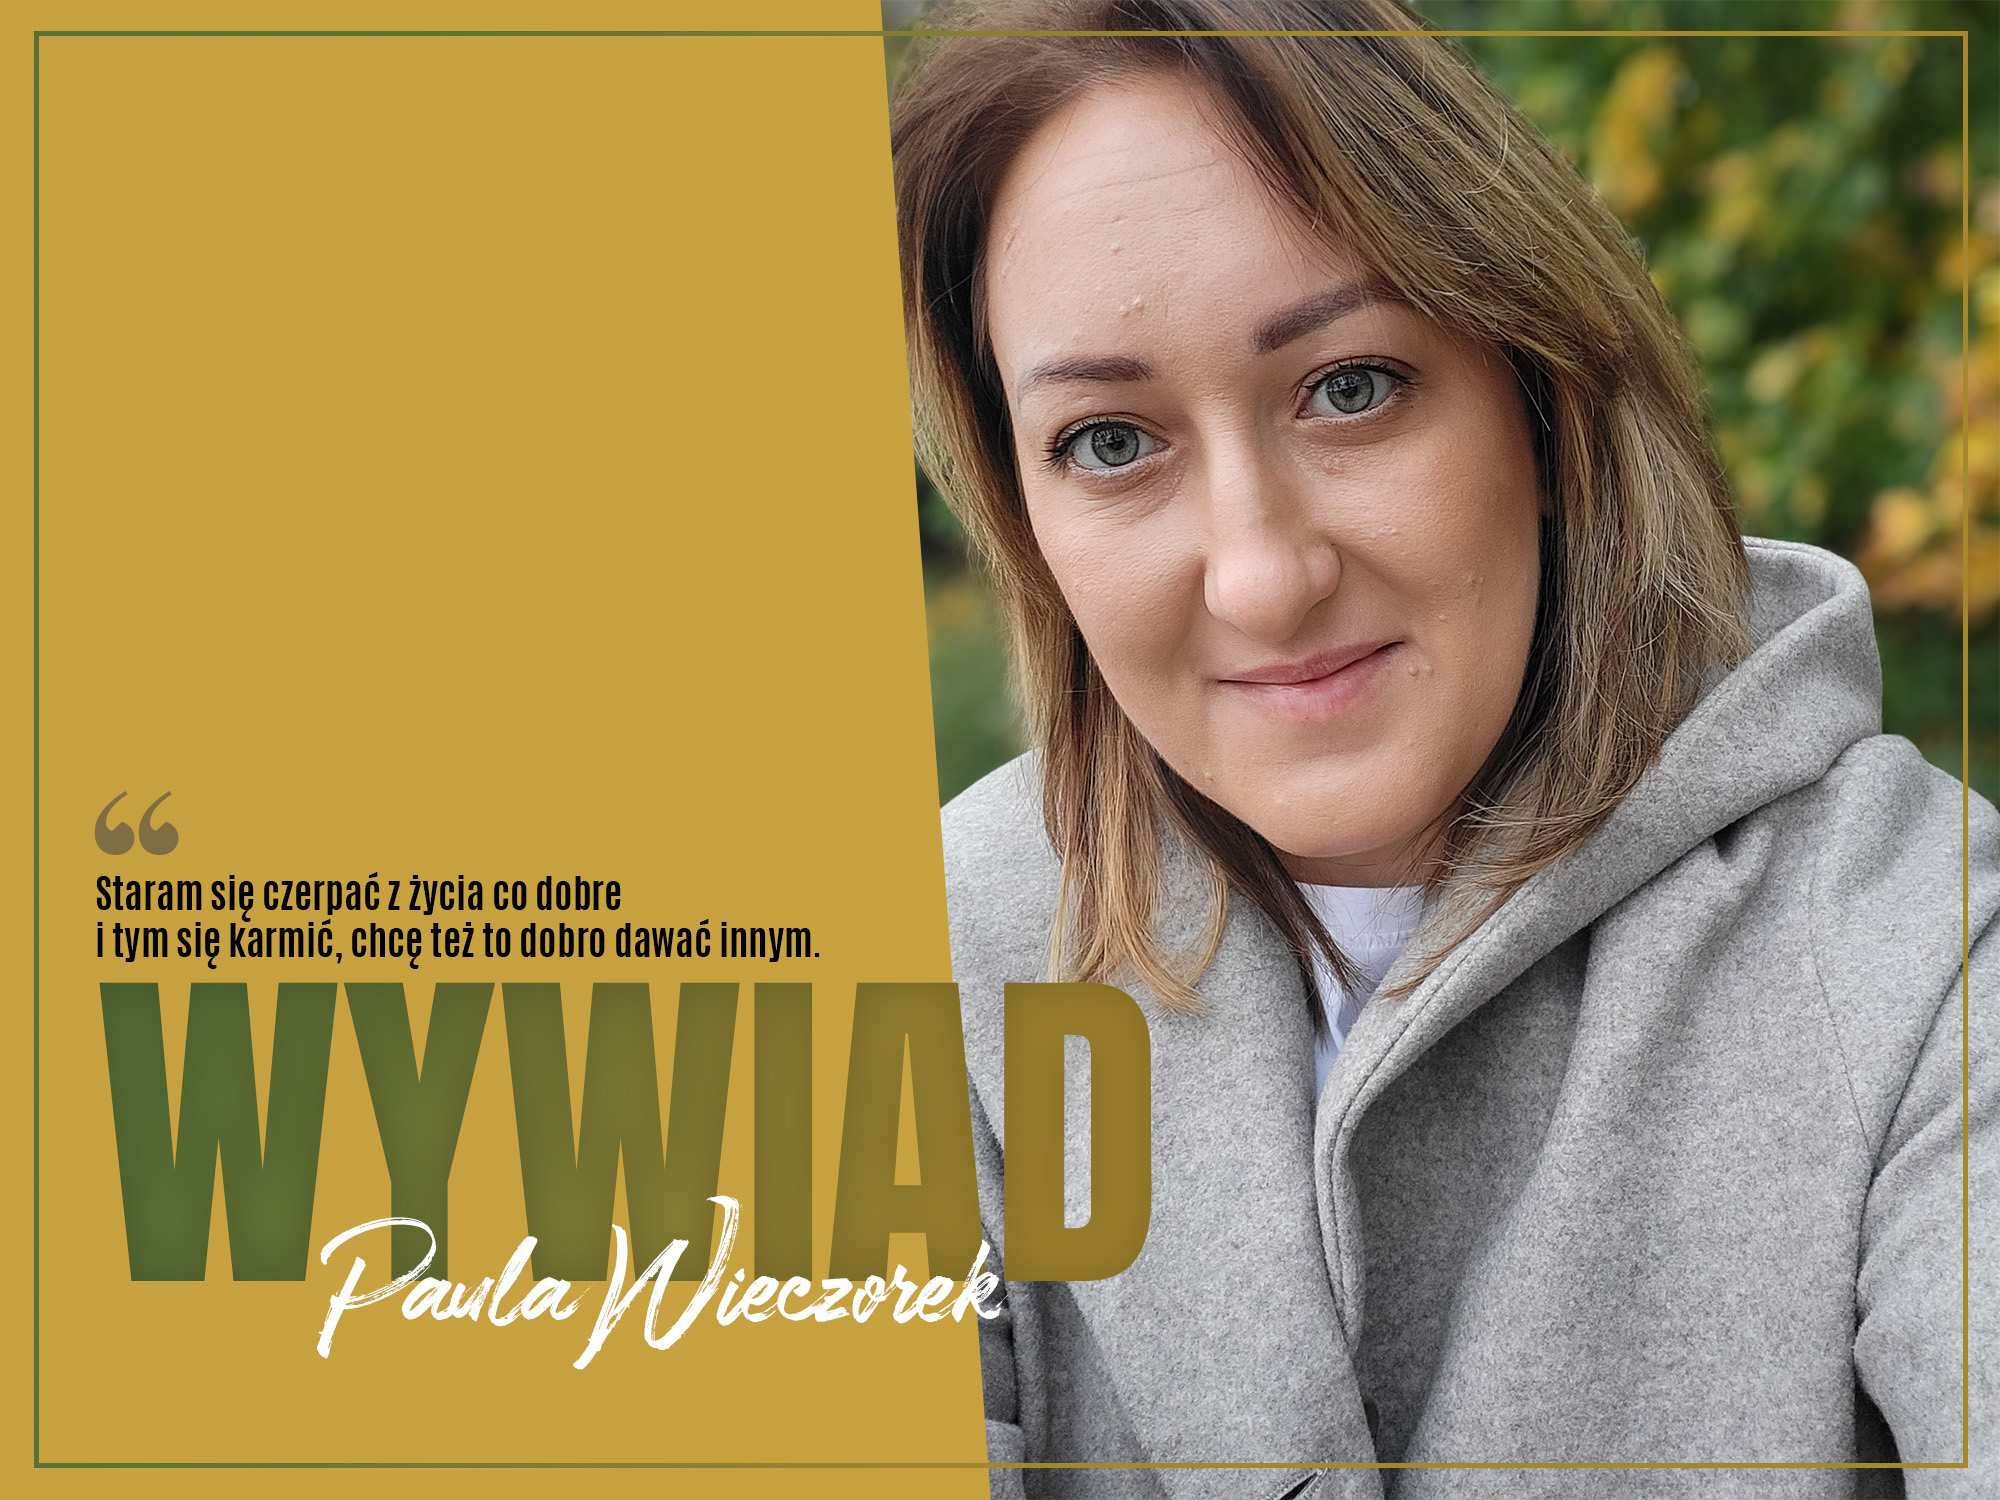 Wywiad - Paula Wieczorek - Zaczytanykasiazkoholik.pl